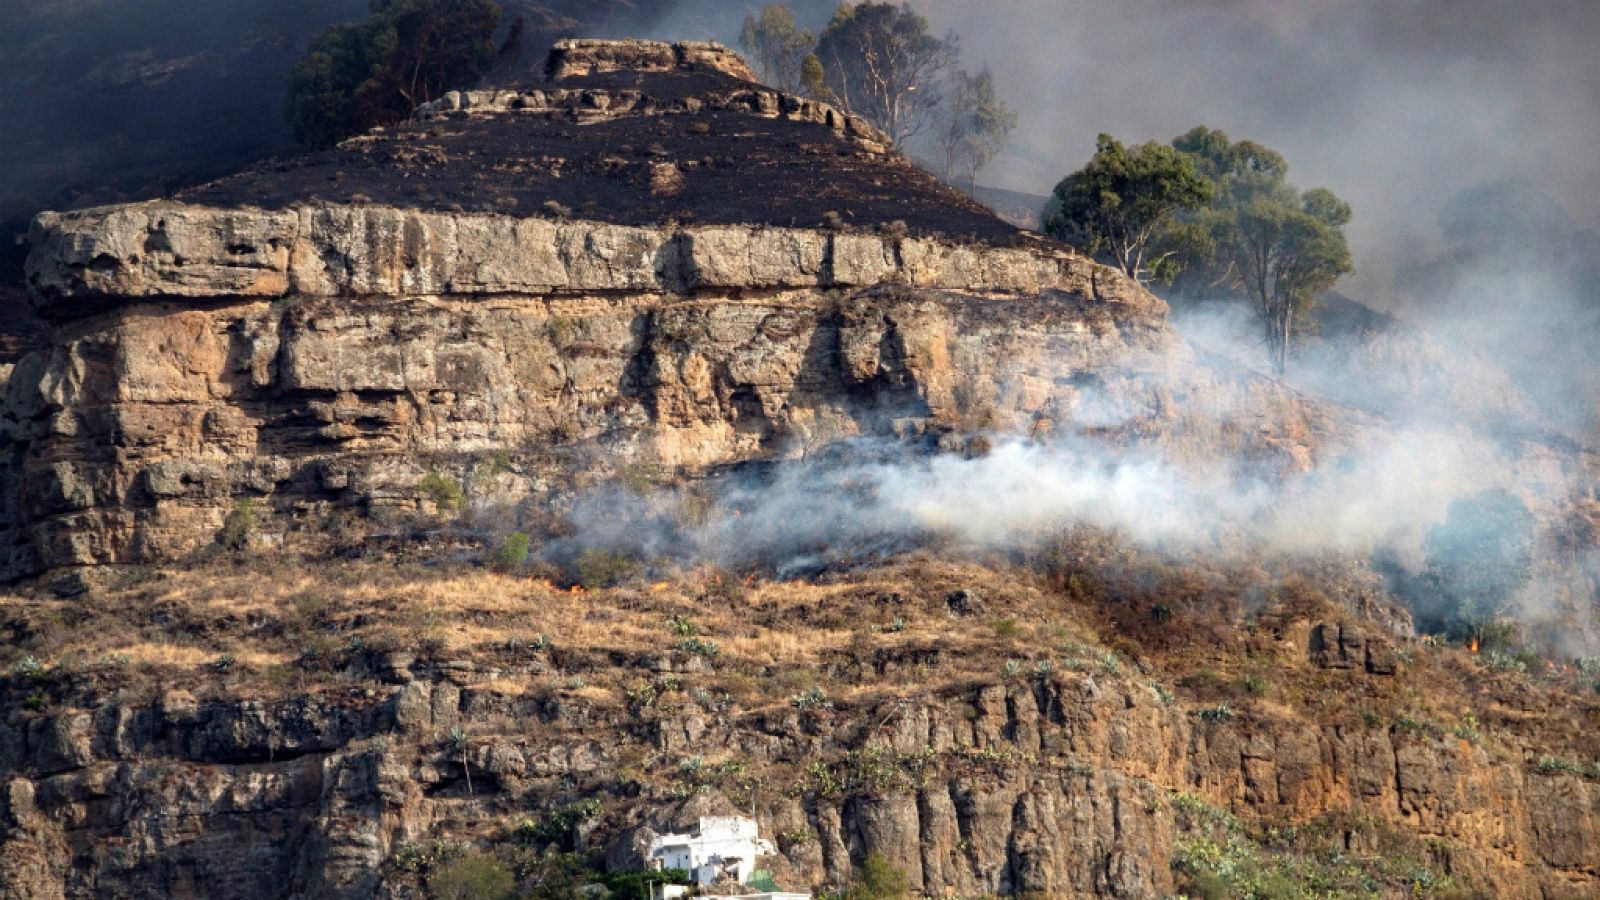  14 horas - El incendio de Gran Canaria está "fuera de control" y obliga a evacuar a 9.000 personas - Escuchar ahora